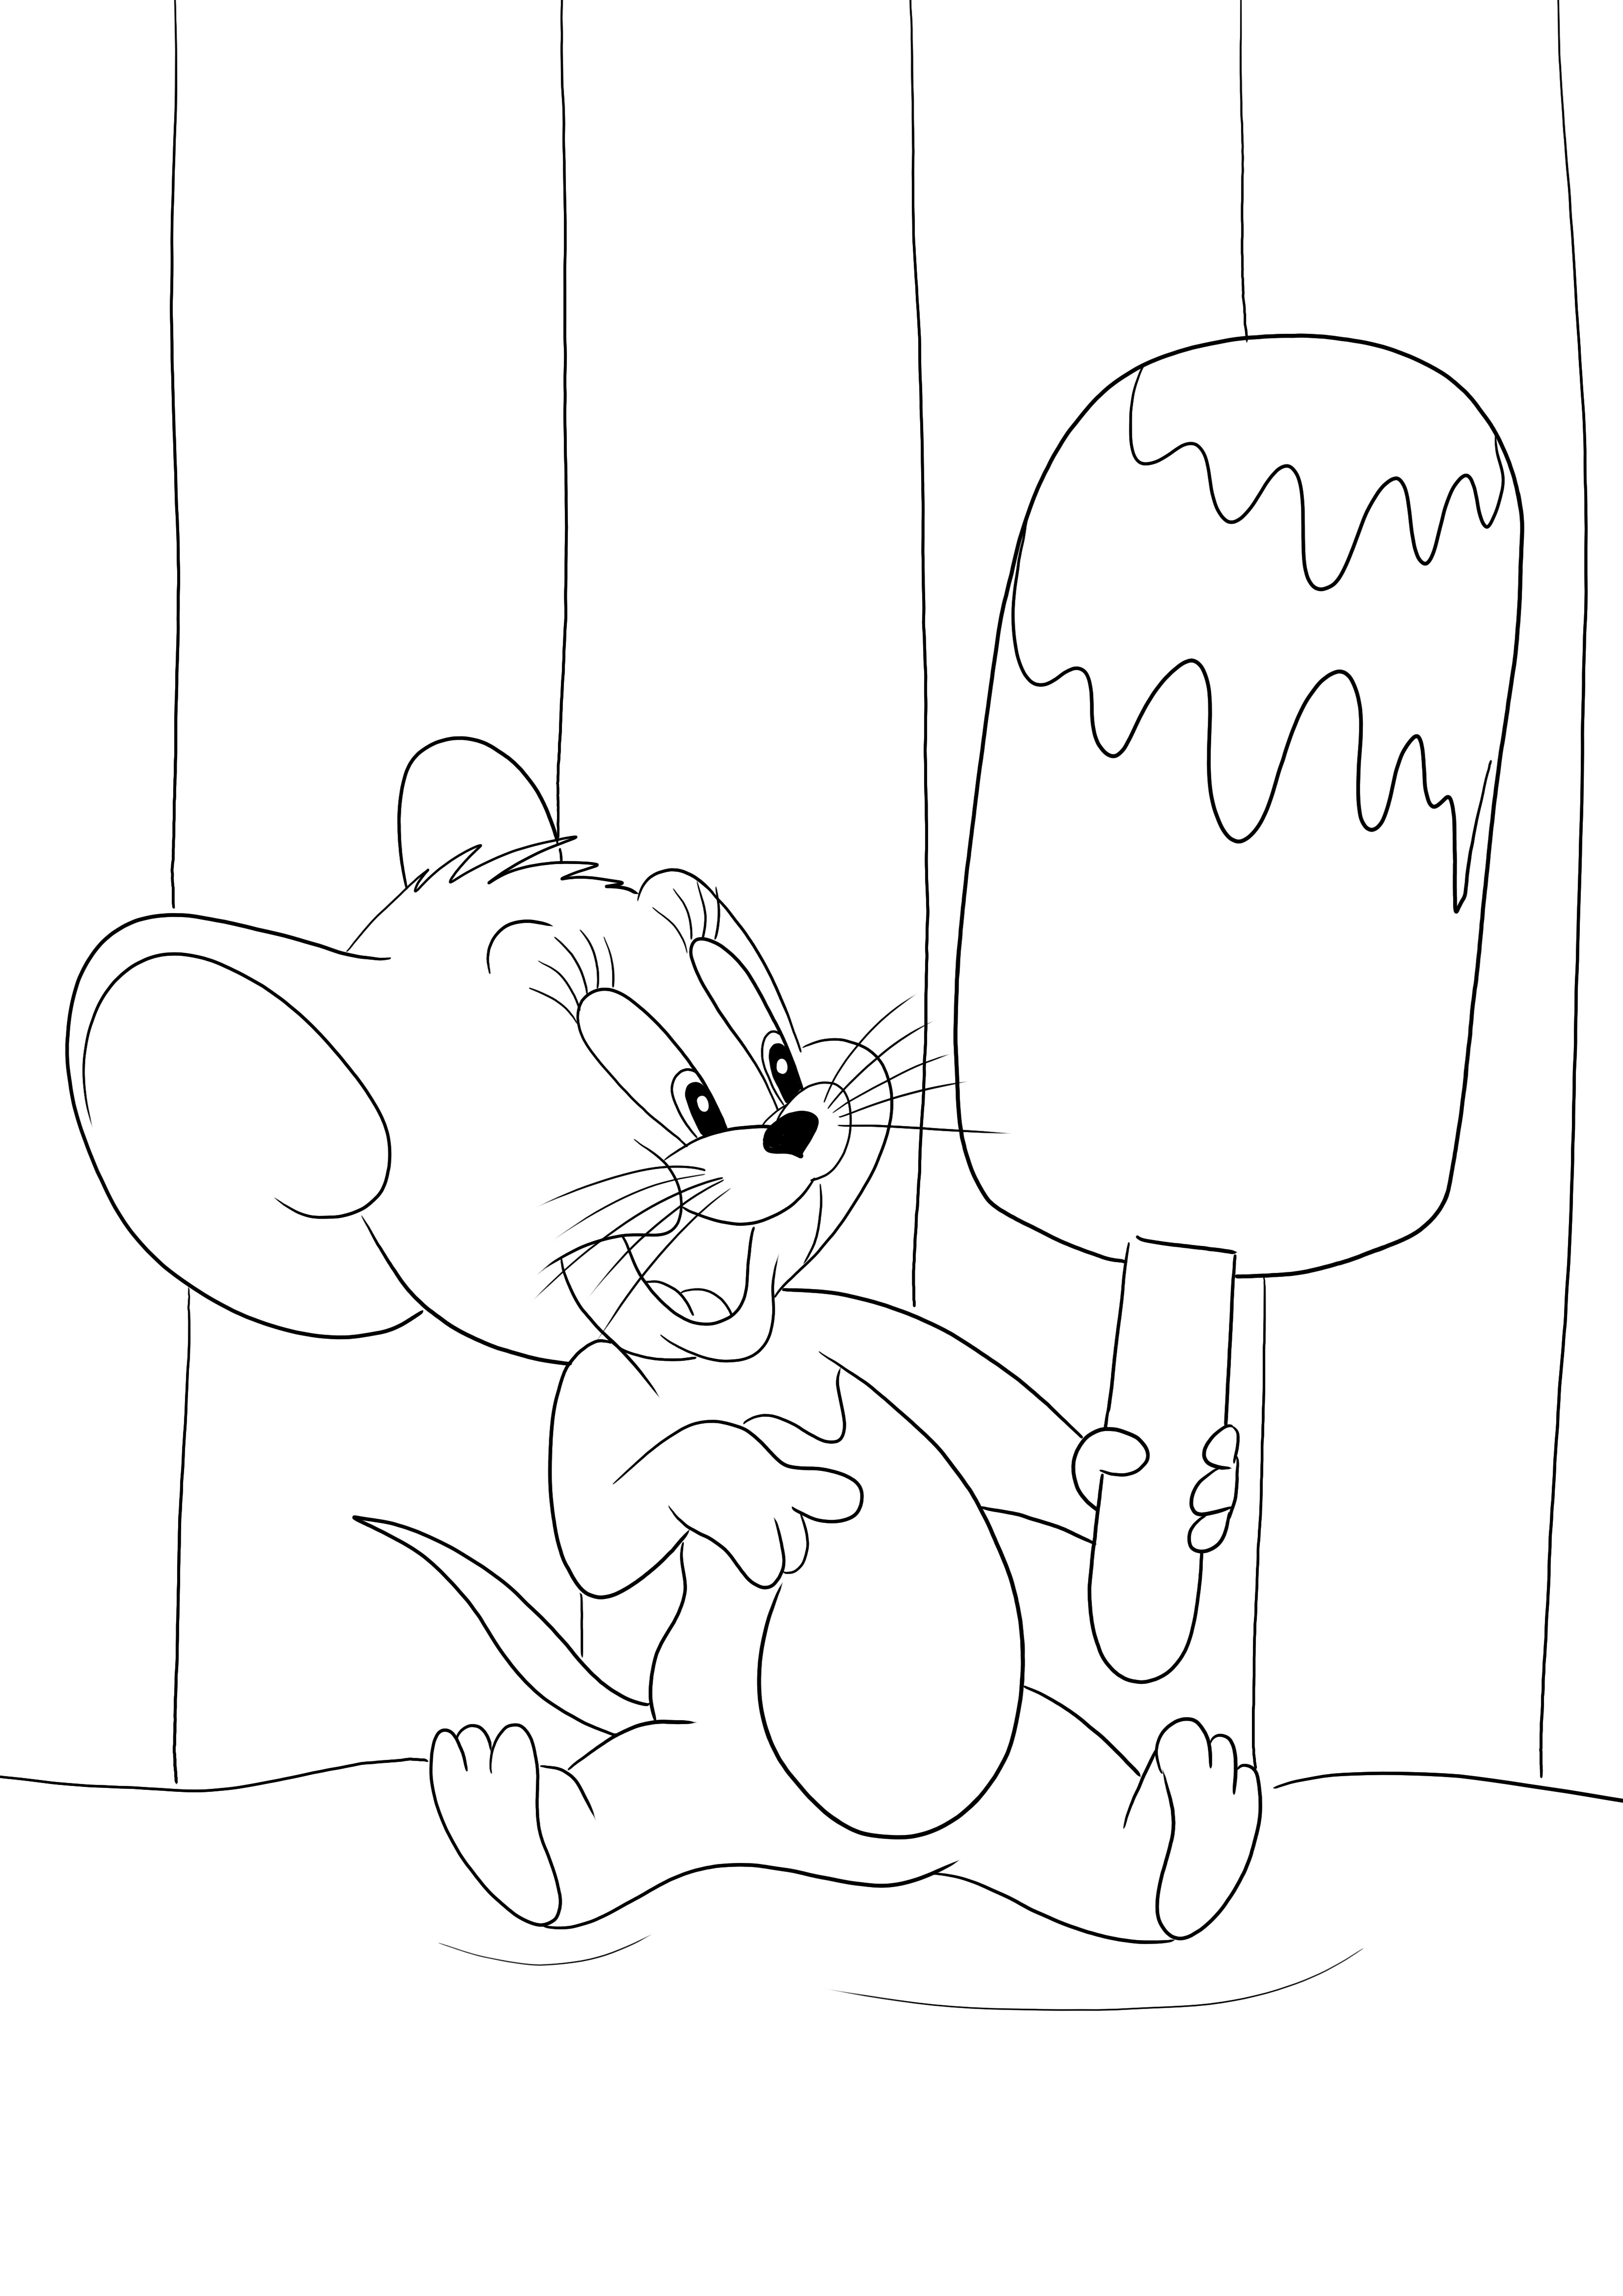 Jerry dan es krim besarnya siap dicetak dan diwarnai oleh anak-anak secara gratis